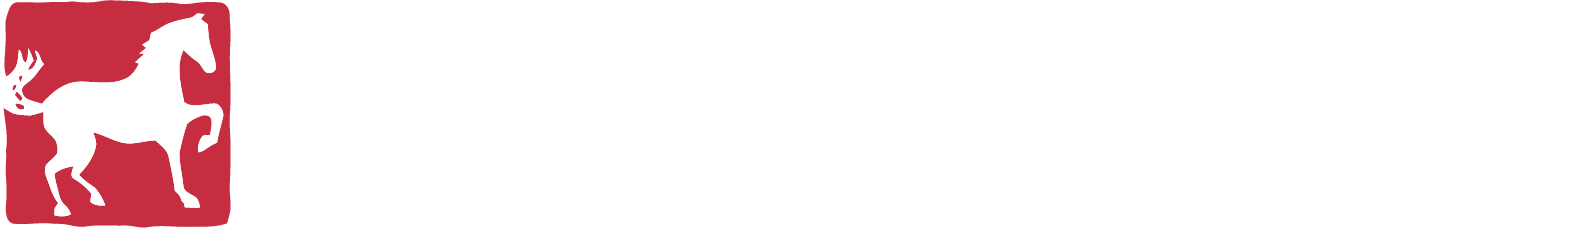 WhiteHorse Finance Logo groß für dunkle Hintergründe (transparentes PNG)